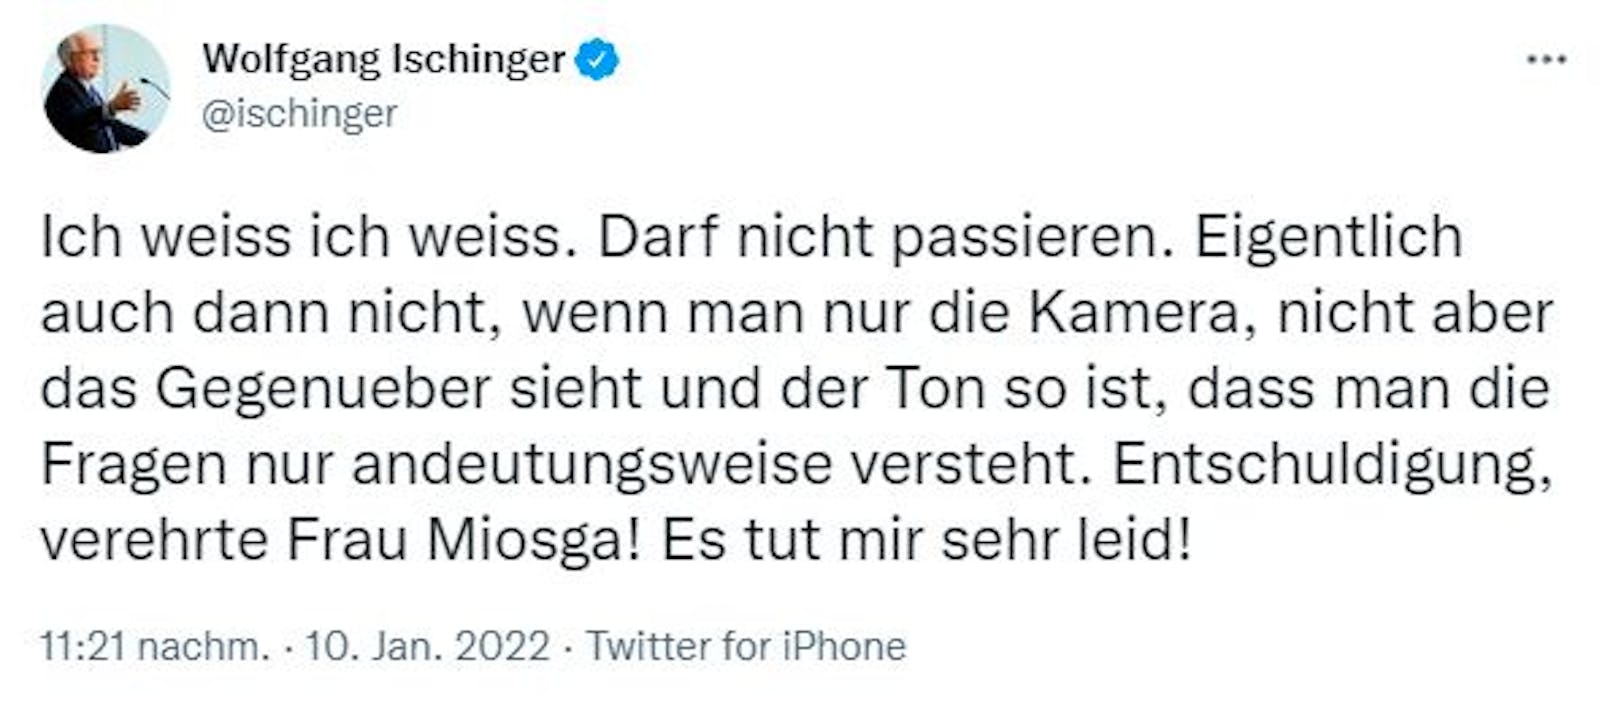 Ischinger war dieser Fehler im Nachhinein sichtlich peinlich. Via Twitter bat er den ARD-Star um Entschuldigung: "Es tut mir sehr leid!"